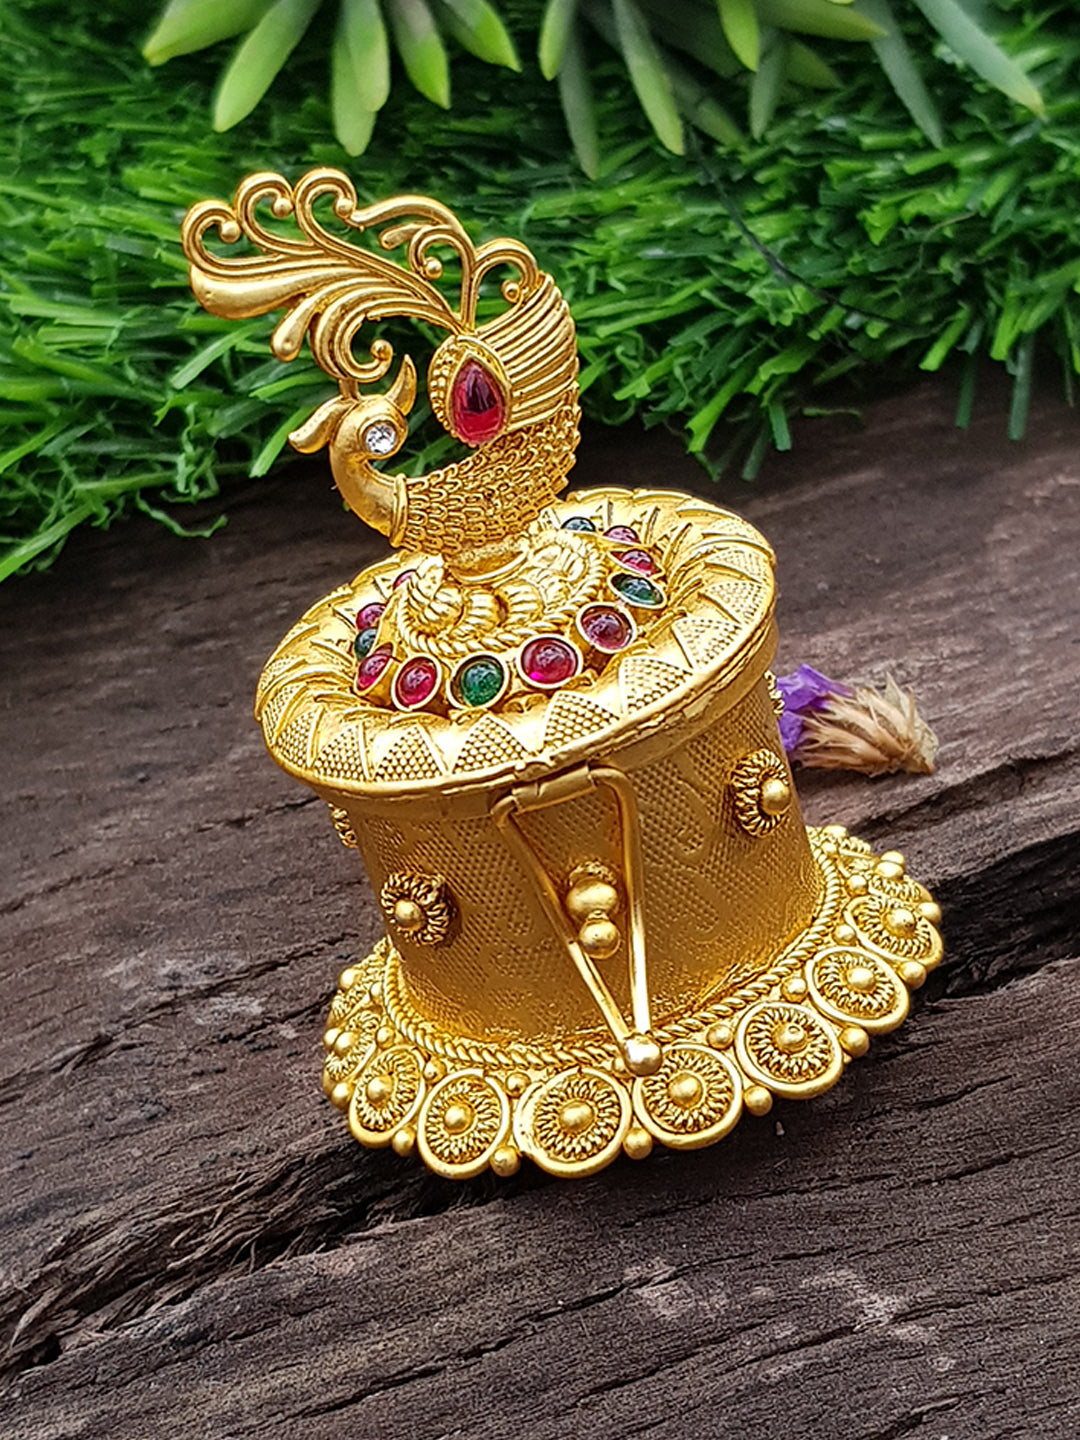 22k Gold Plated Peacock Premium Kum Kum Box best for gifting 9867N